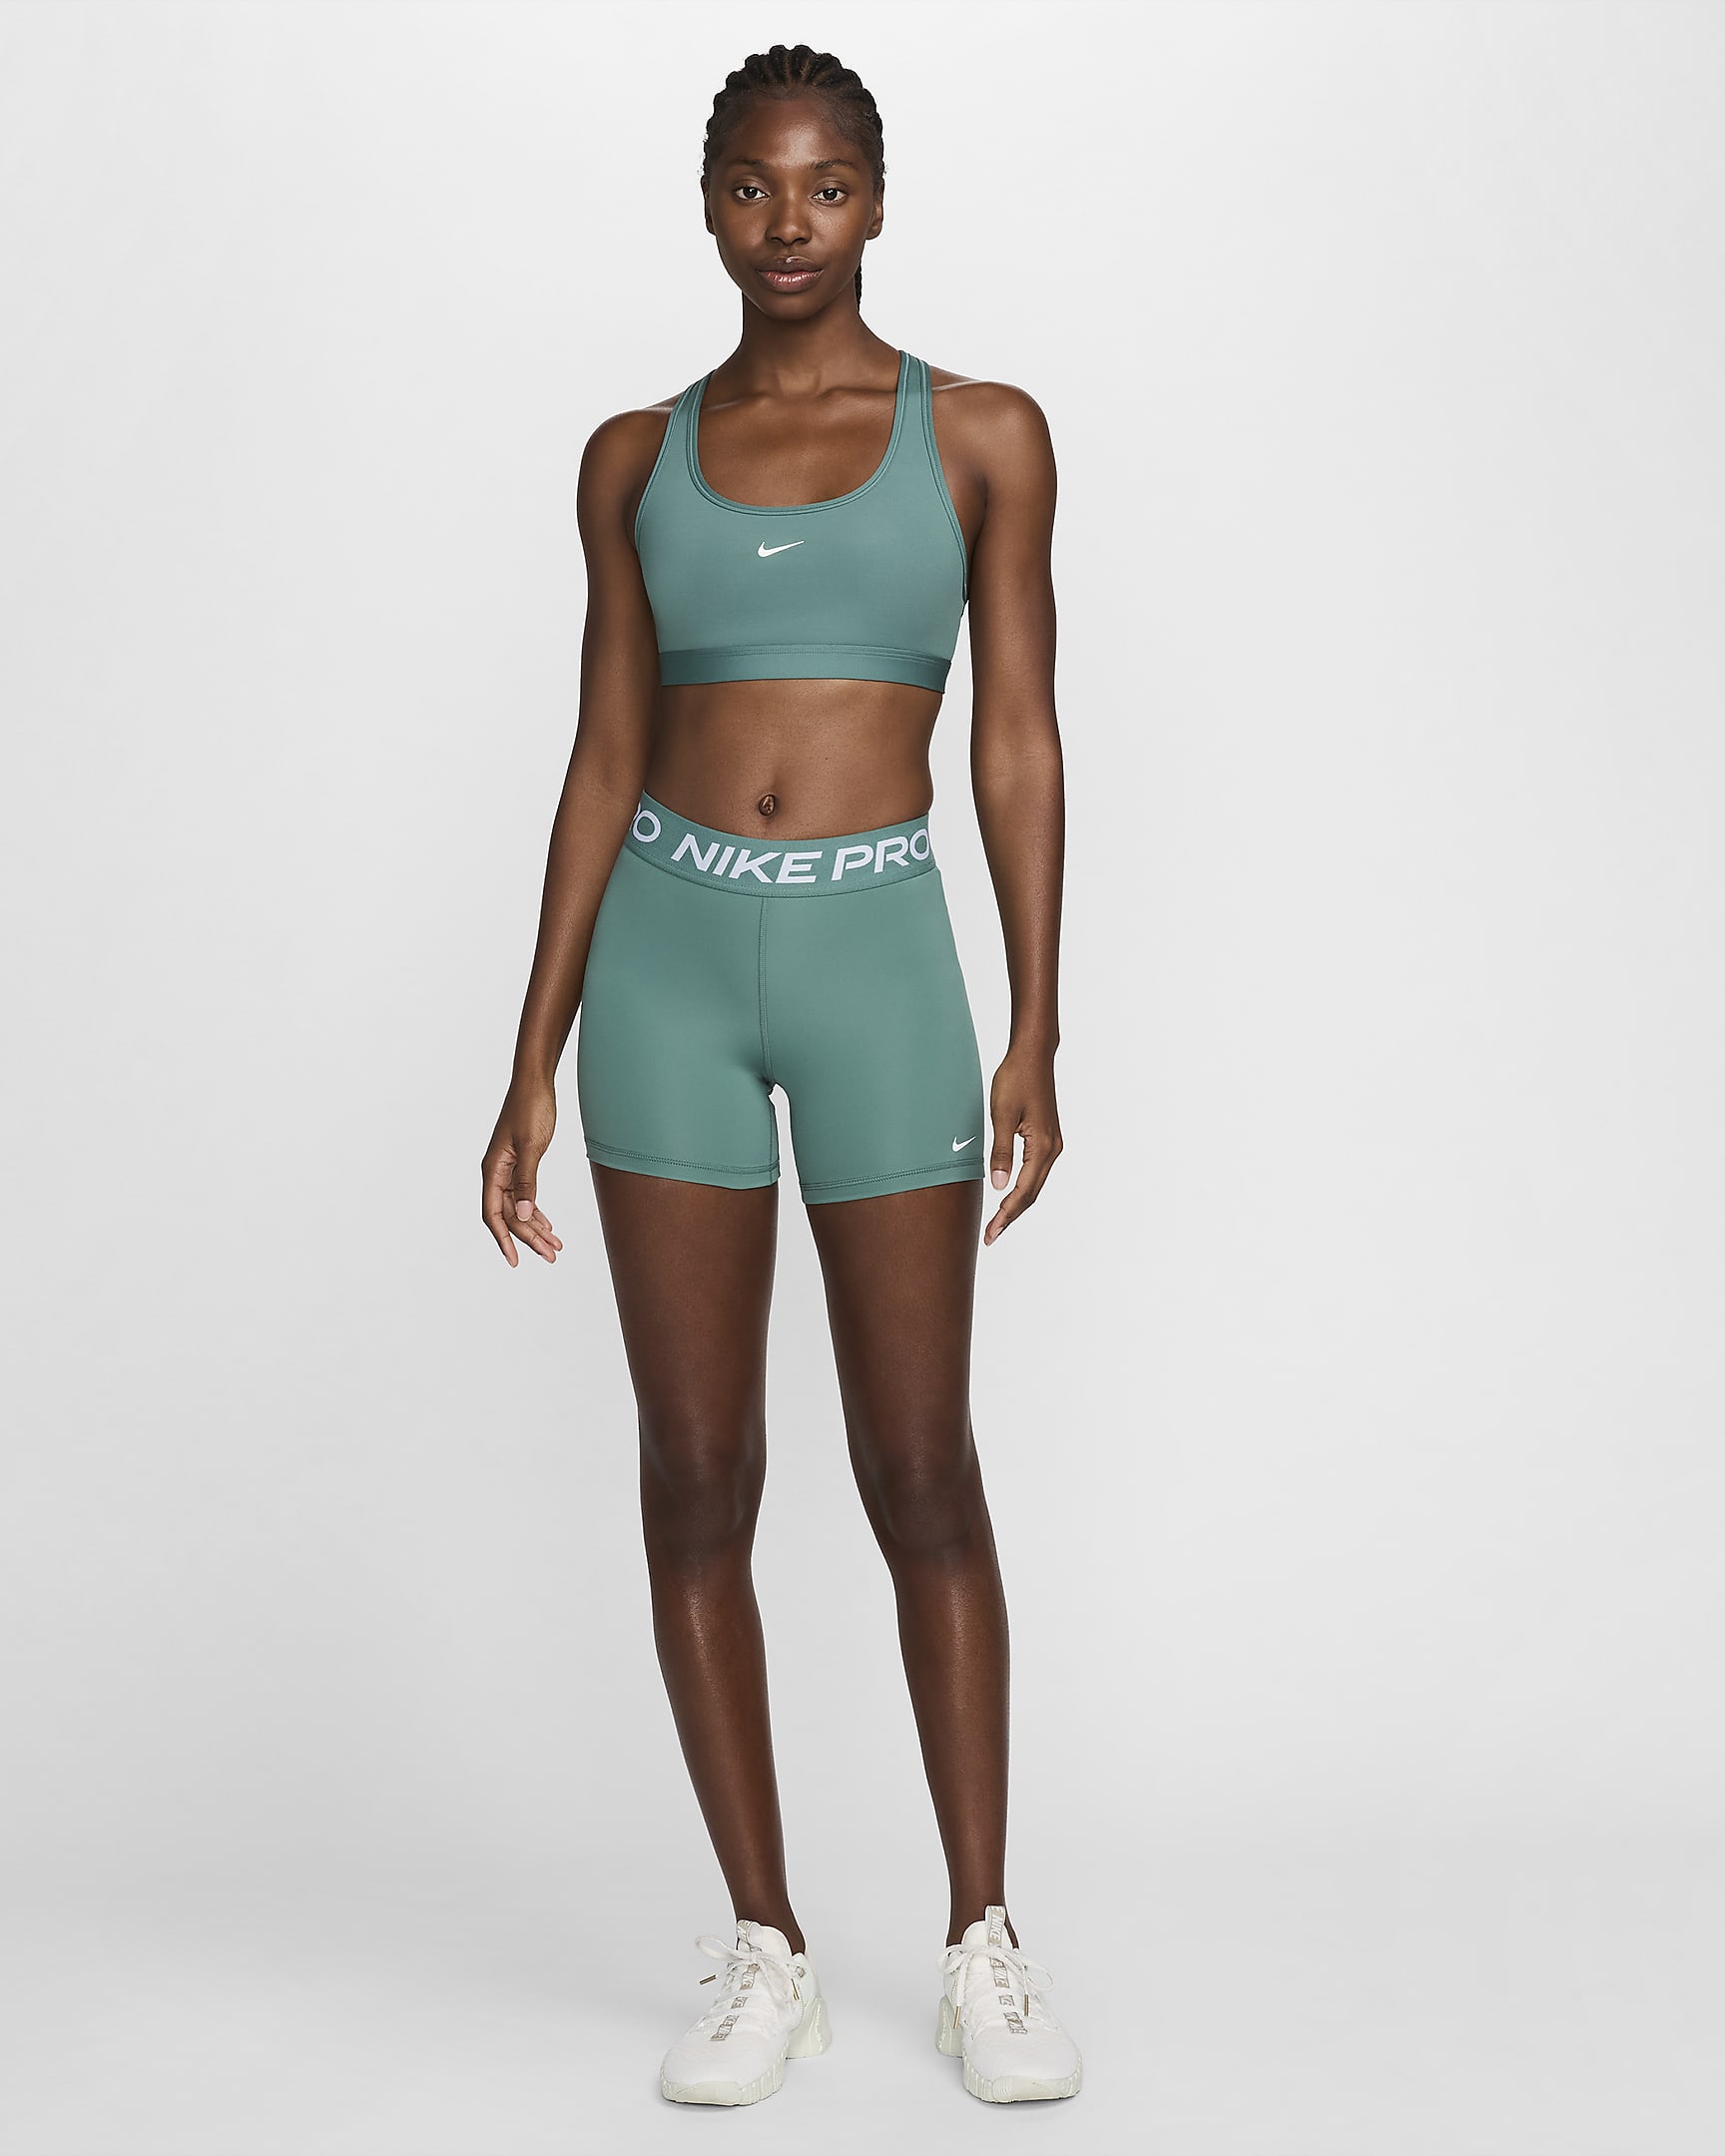 Nike Pro 365-shorts (13 cm) til kvinder - Bicoastal/hvid